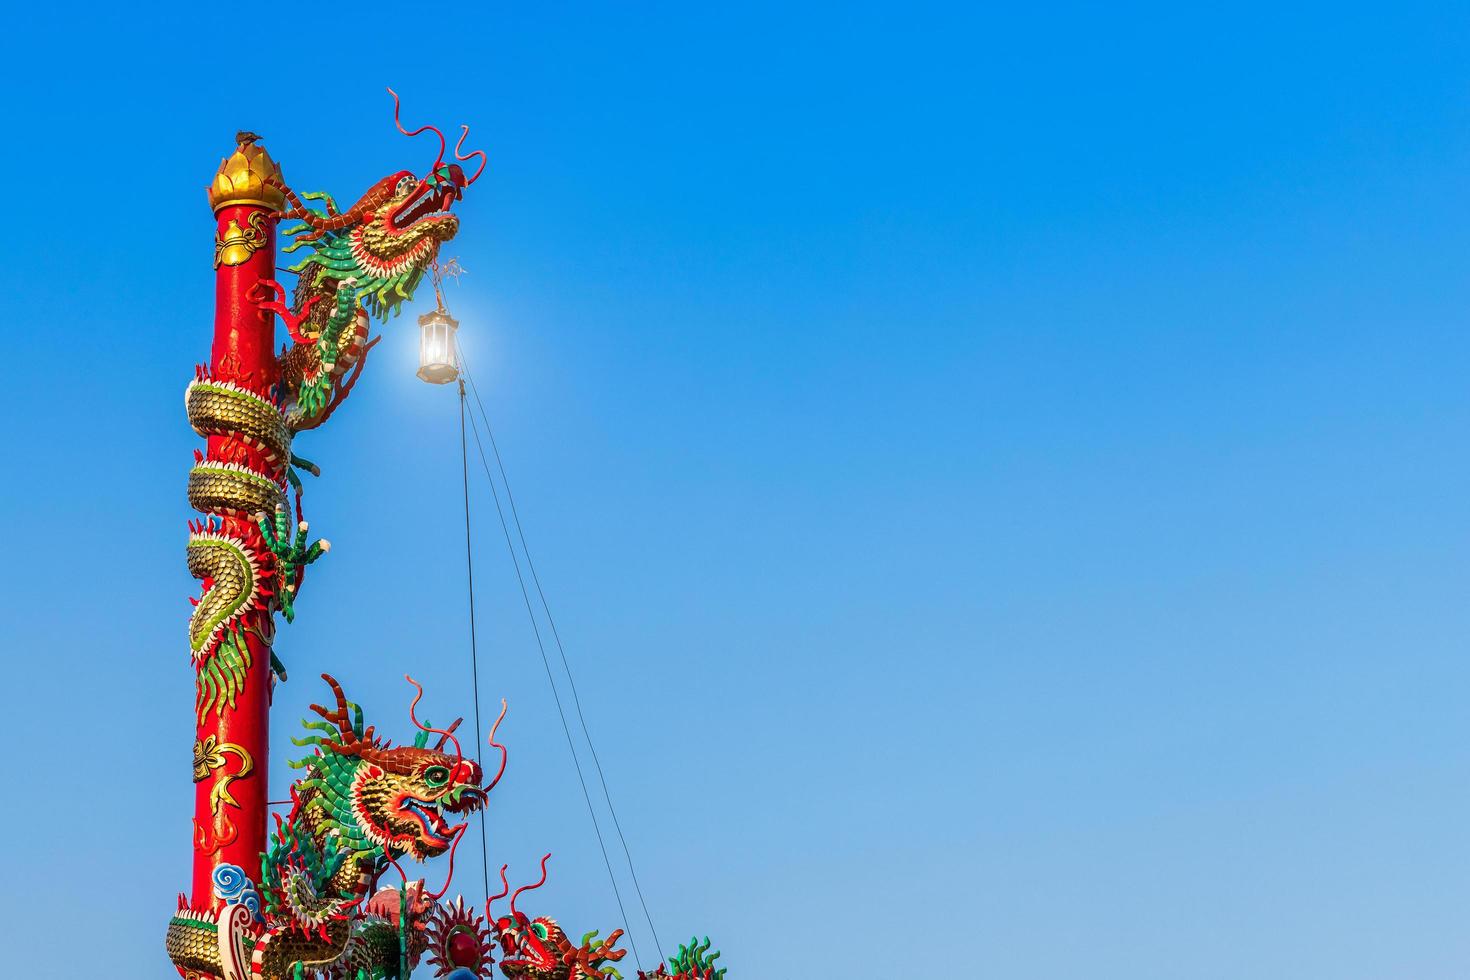 vackra kinesiska drakar på ett tempel för kinesisk nyårsfestival på kinesisk helgedom med blå himmel. foto